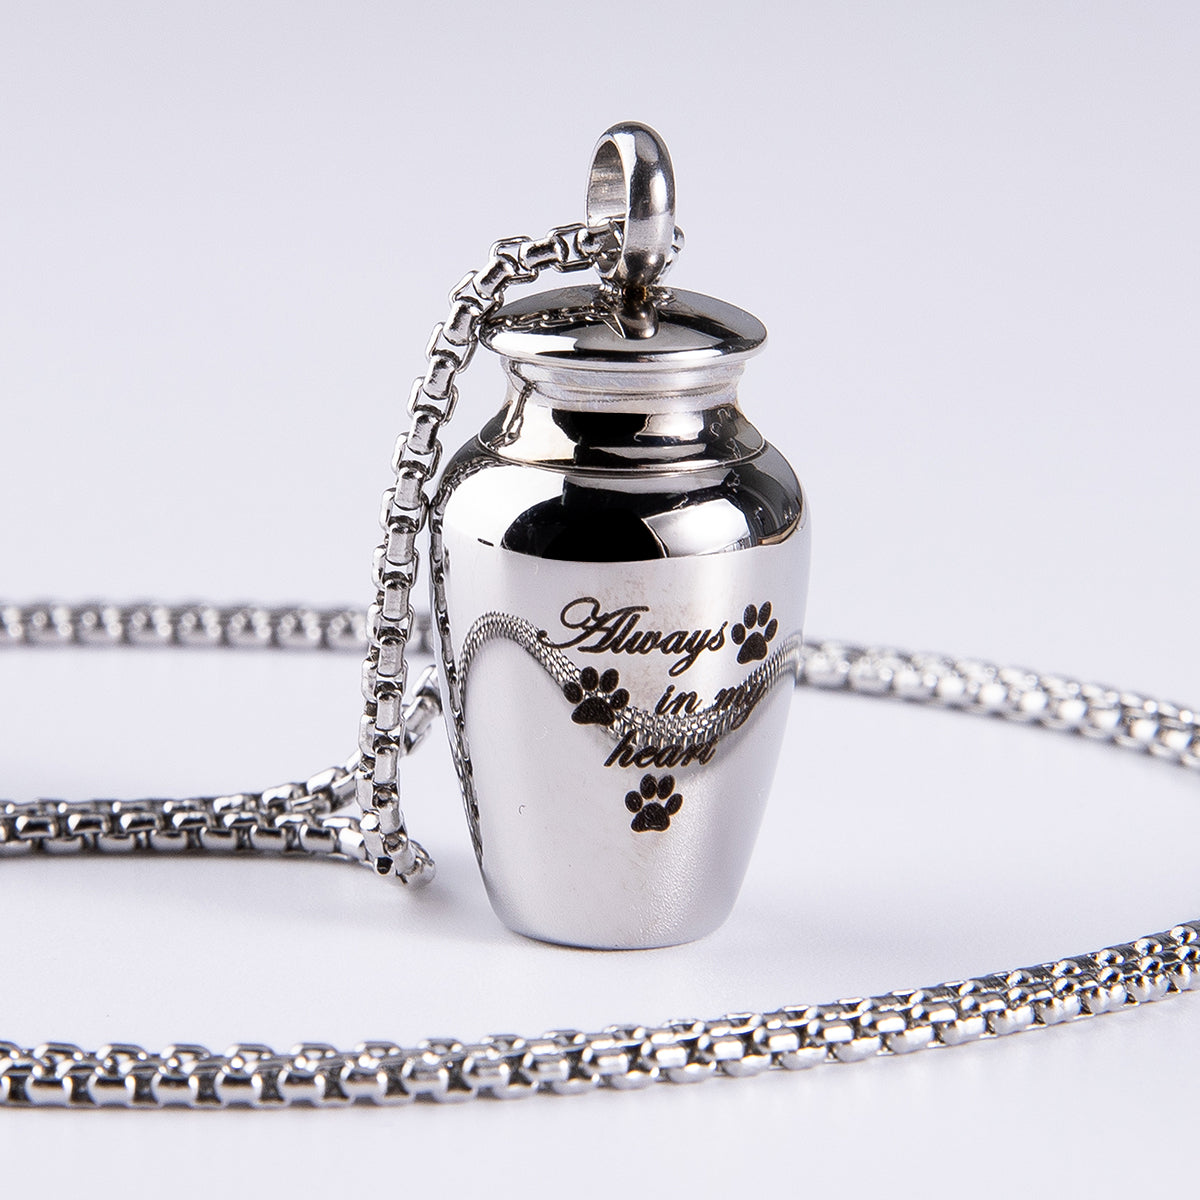 Custom Keepsake Necklace with Photo